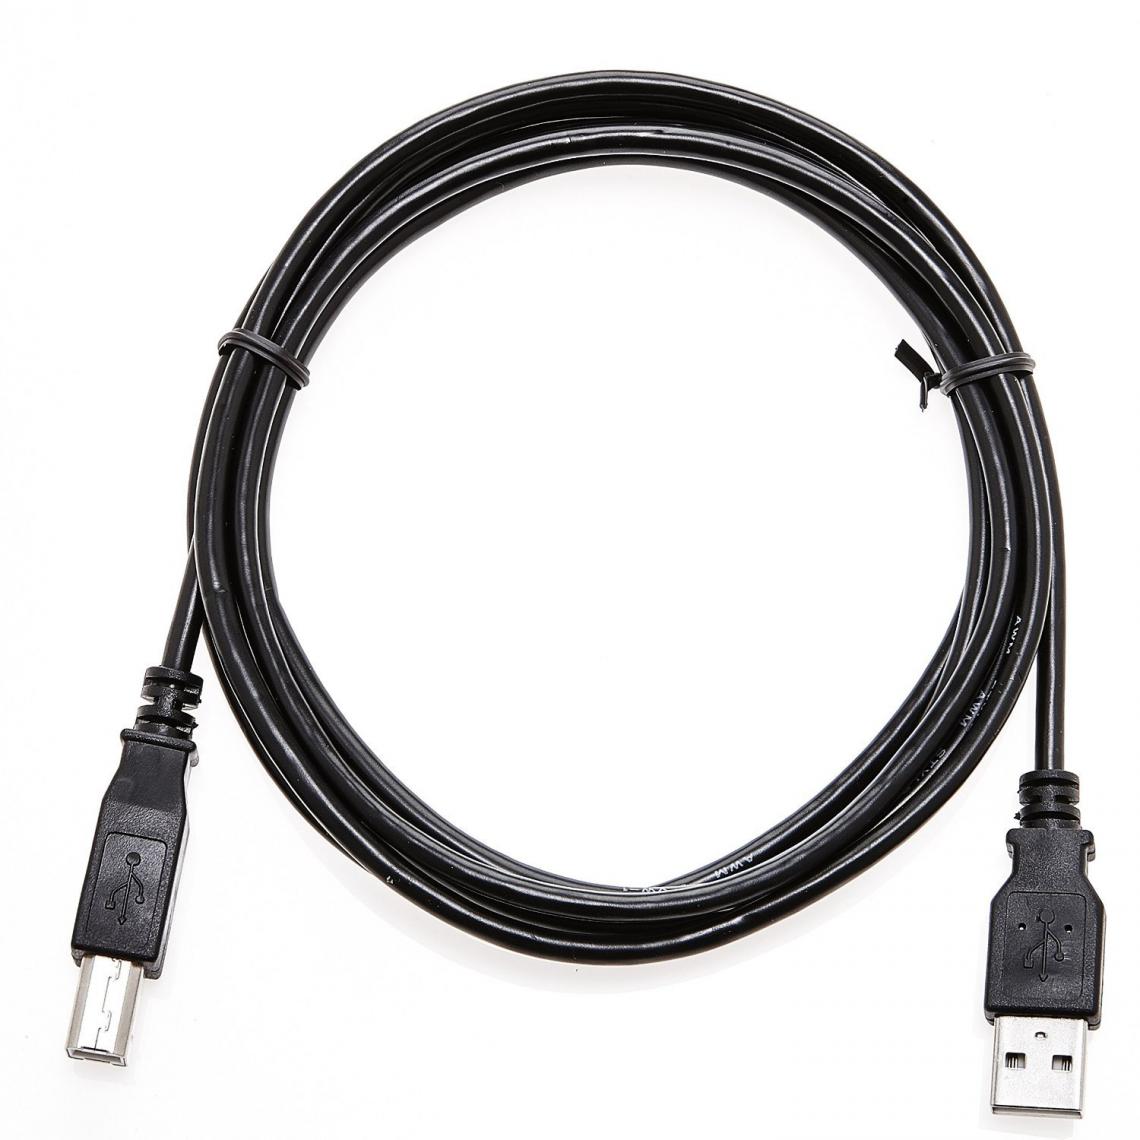 Ineck - INECK - USB 2.0 - cable usb A-B pour l'imprimante, Scanner, copieur - Noir 5M - Câble antenne